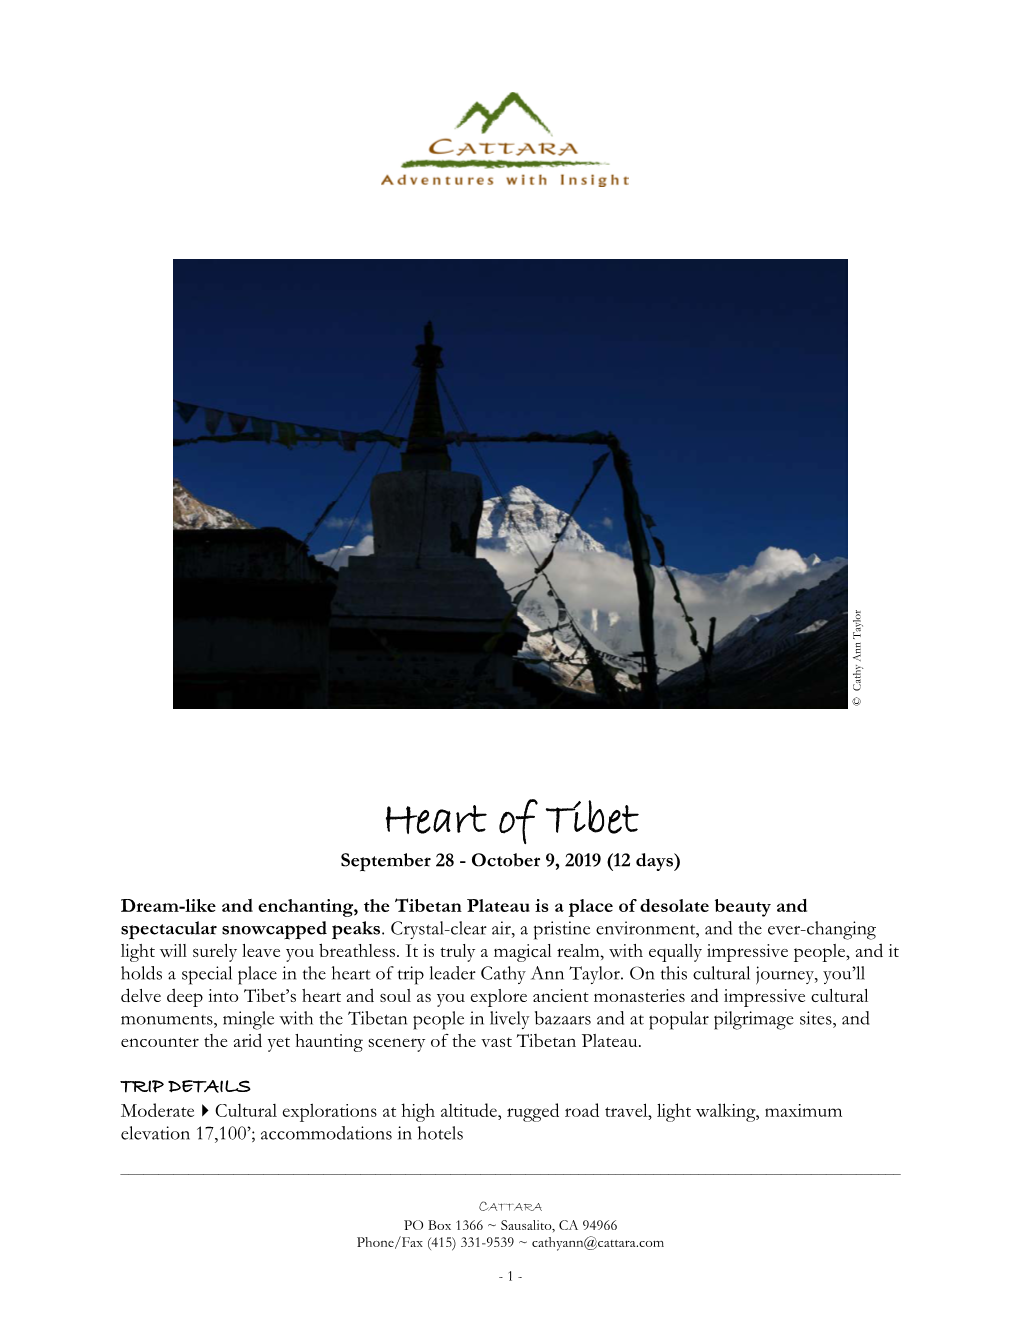 Heart of Tibet September 28 - October 9, 2019 (12 Days)